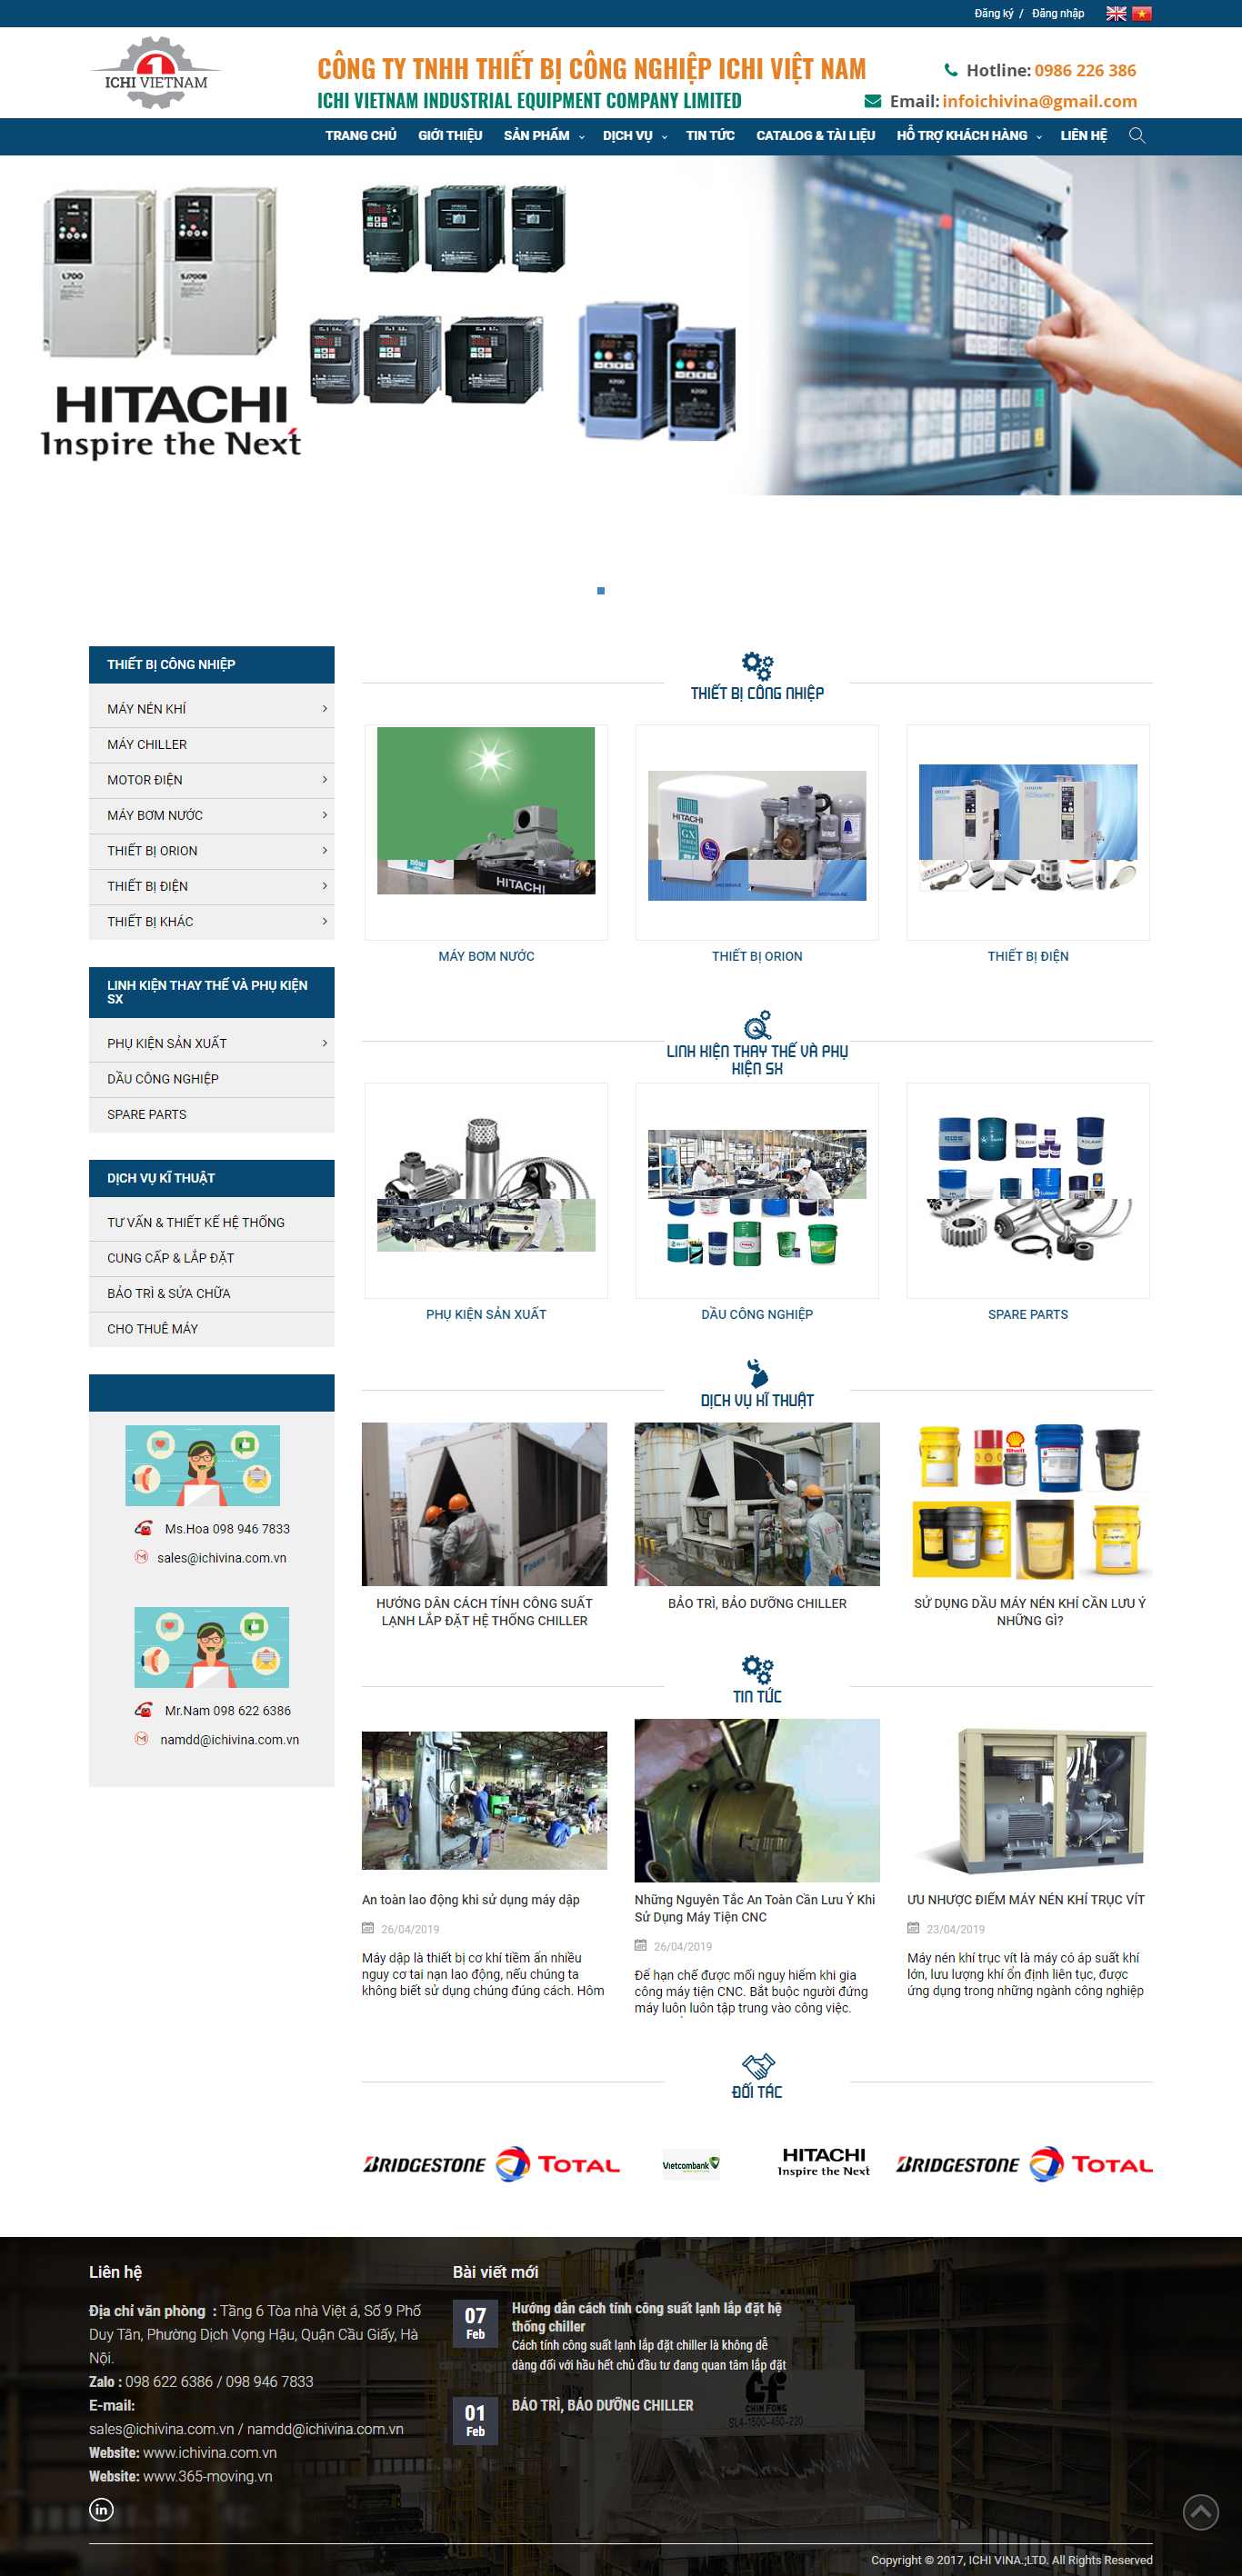 Thiết kế Website thiết bị công nghiệp - ichivina.com.vn